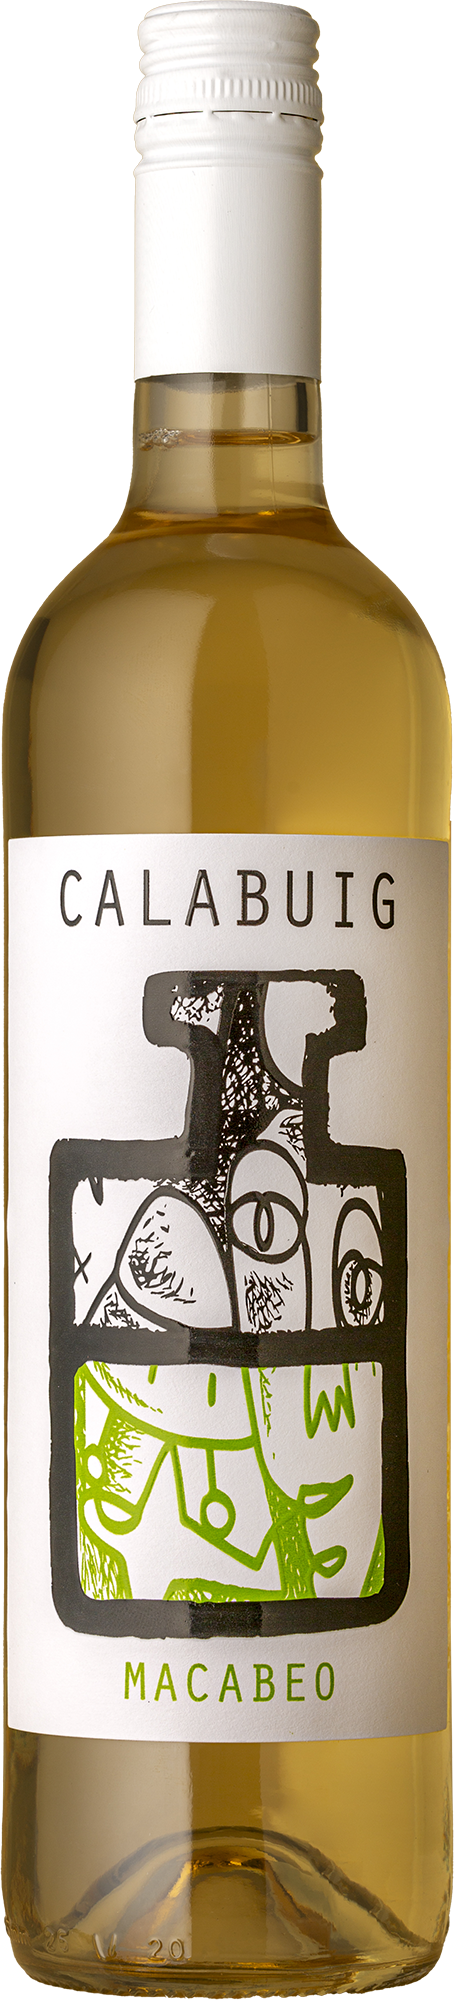 Antonio Arraez - Calabuig Macabeo 2020 White Wine